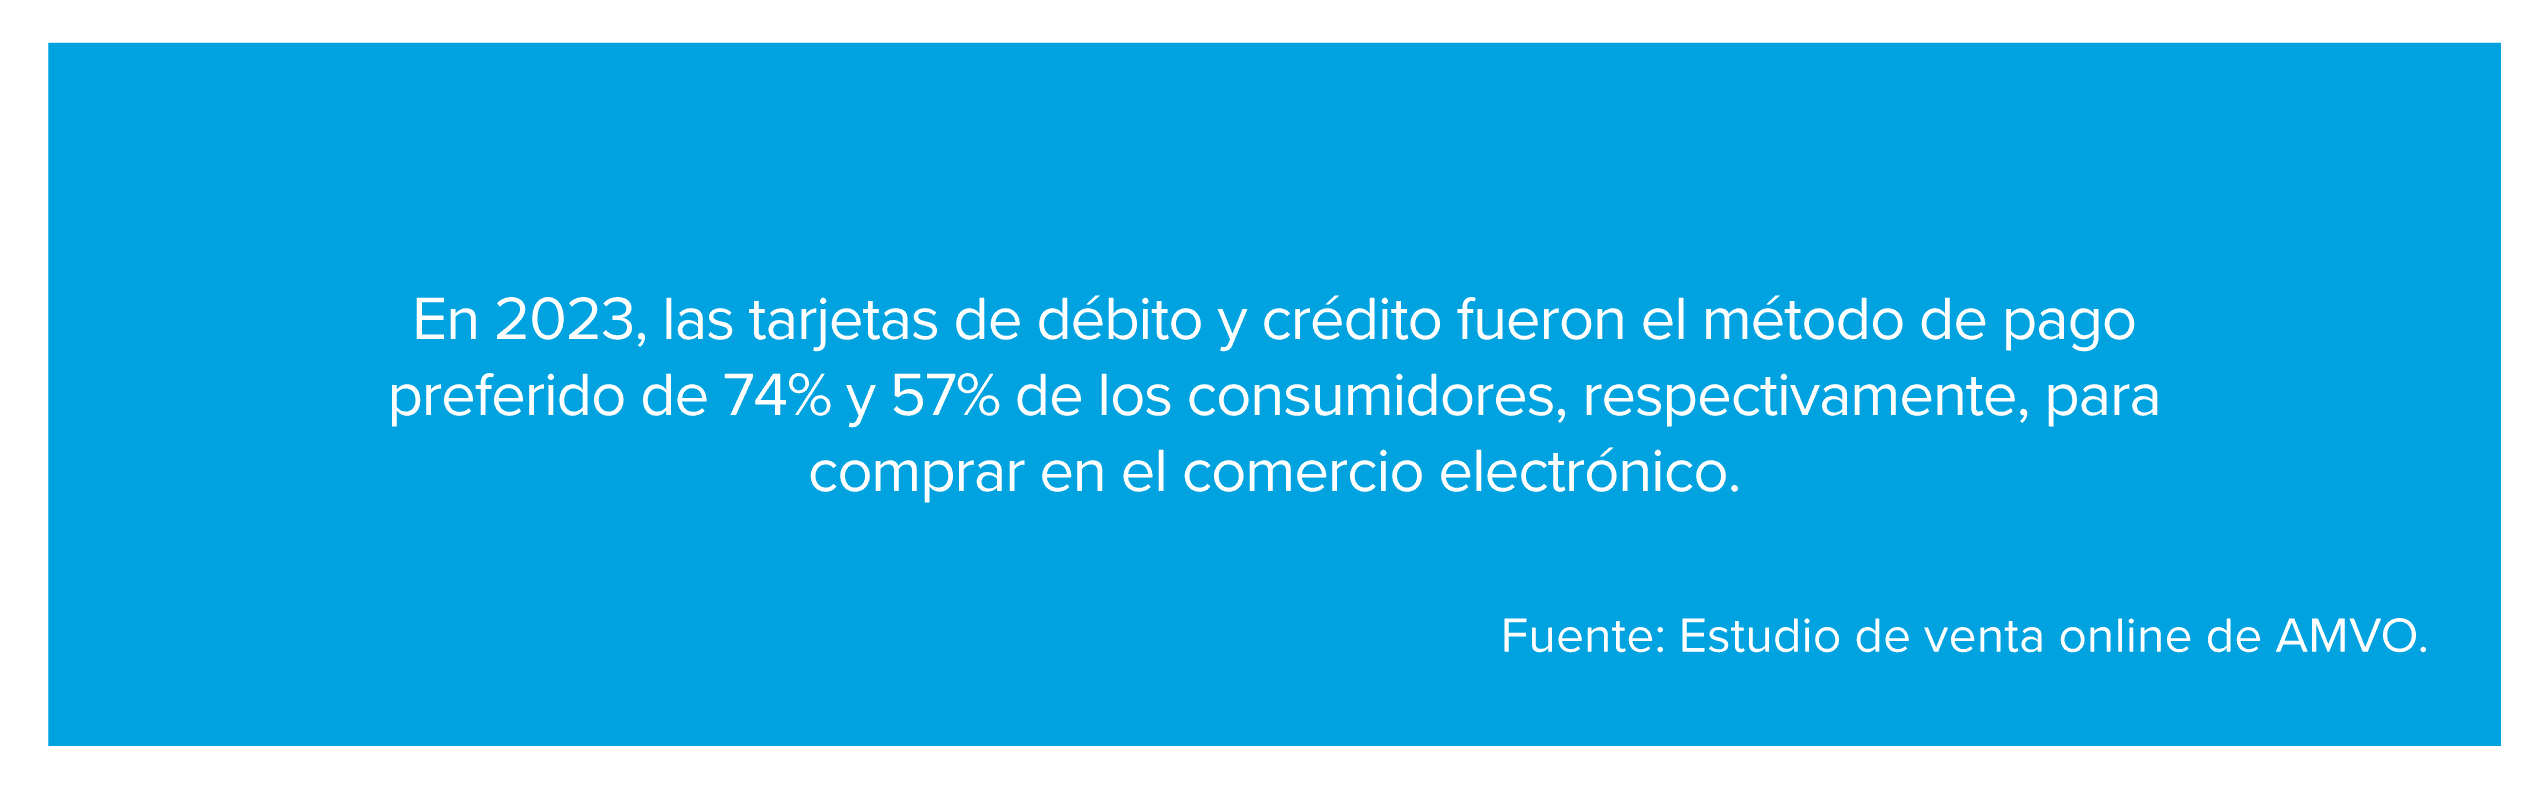 En 2023, las tarjetas de débito y crédito fueron el método de pago preferido de 74% y 57% de los consumidores, respectivamente, para comprar en el comercio electrónico.